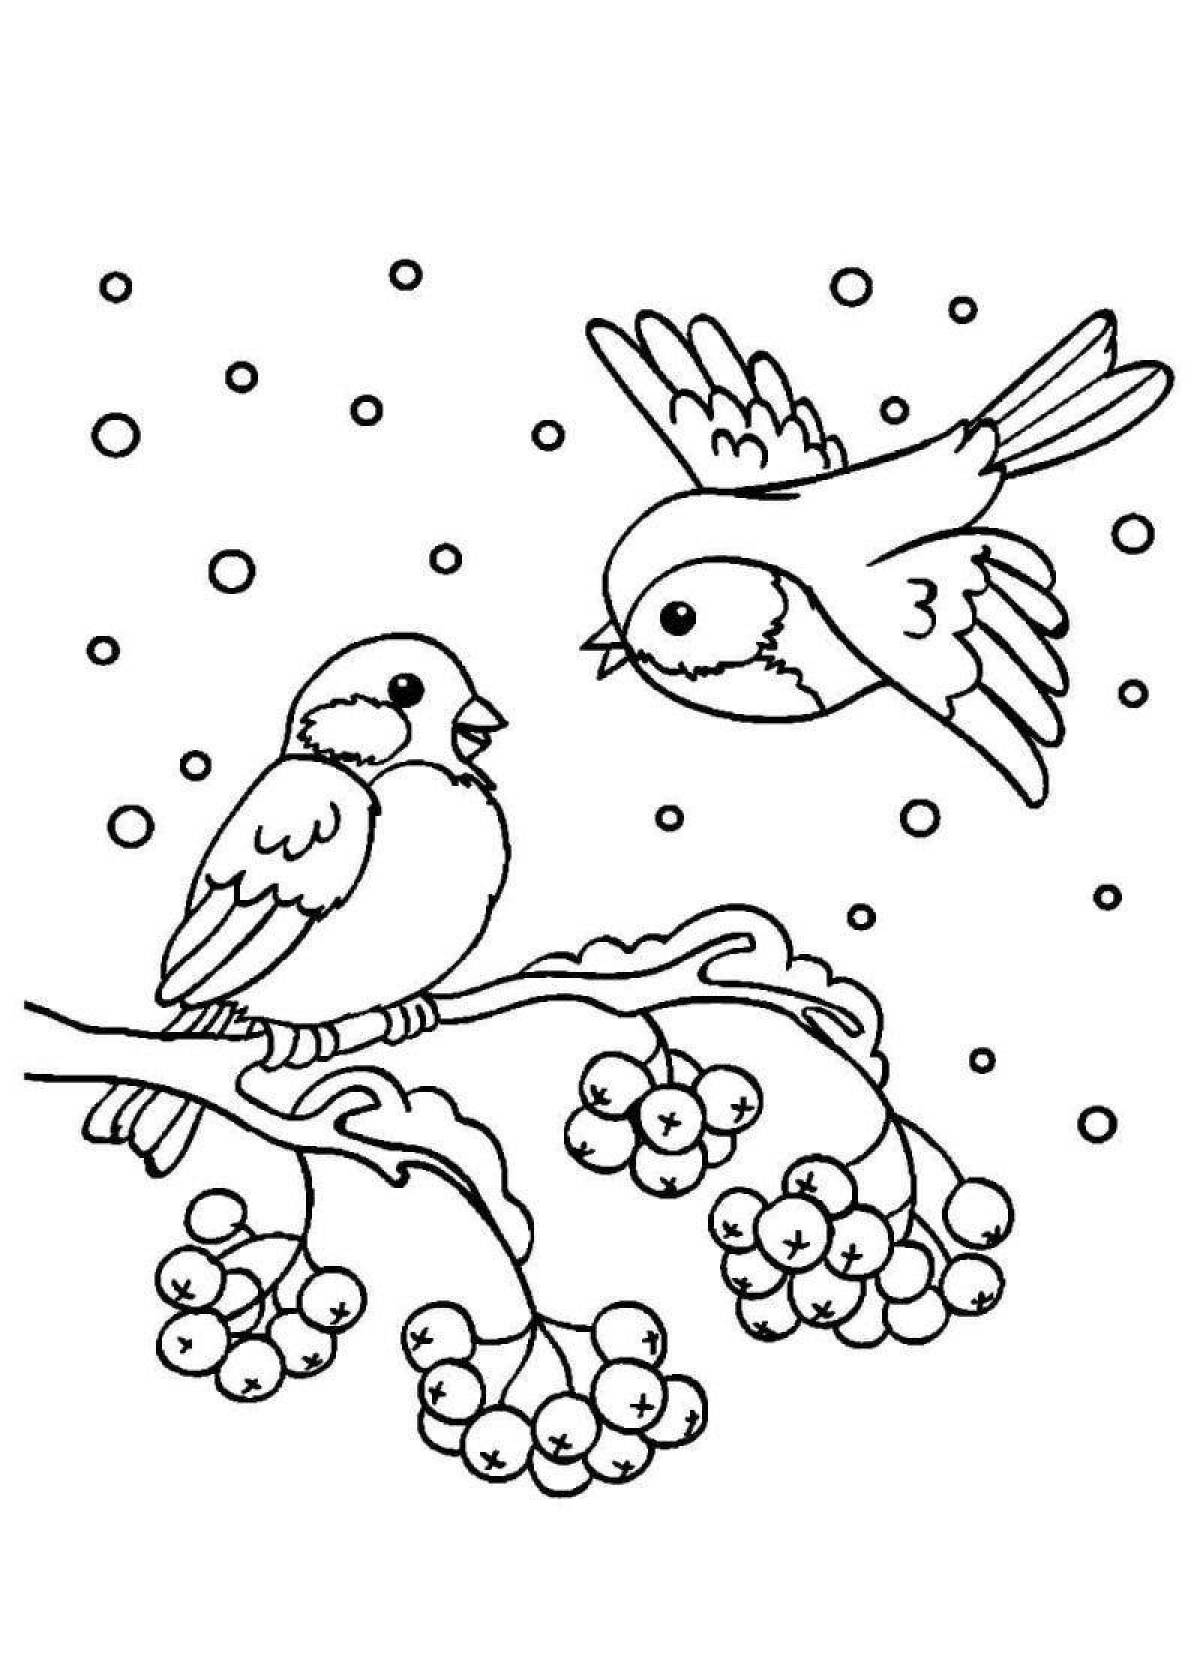 Великолепная раскраска зимующих птиц для детей 3-4 лет